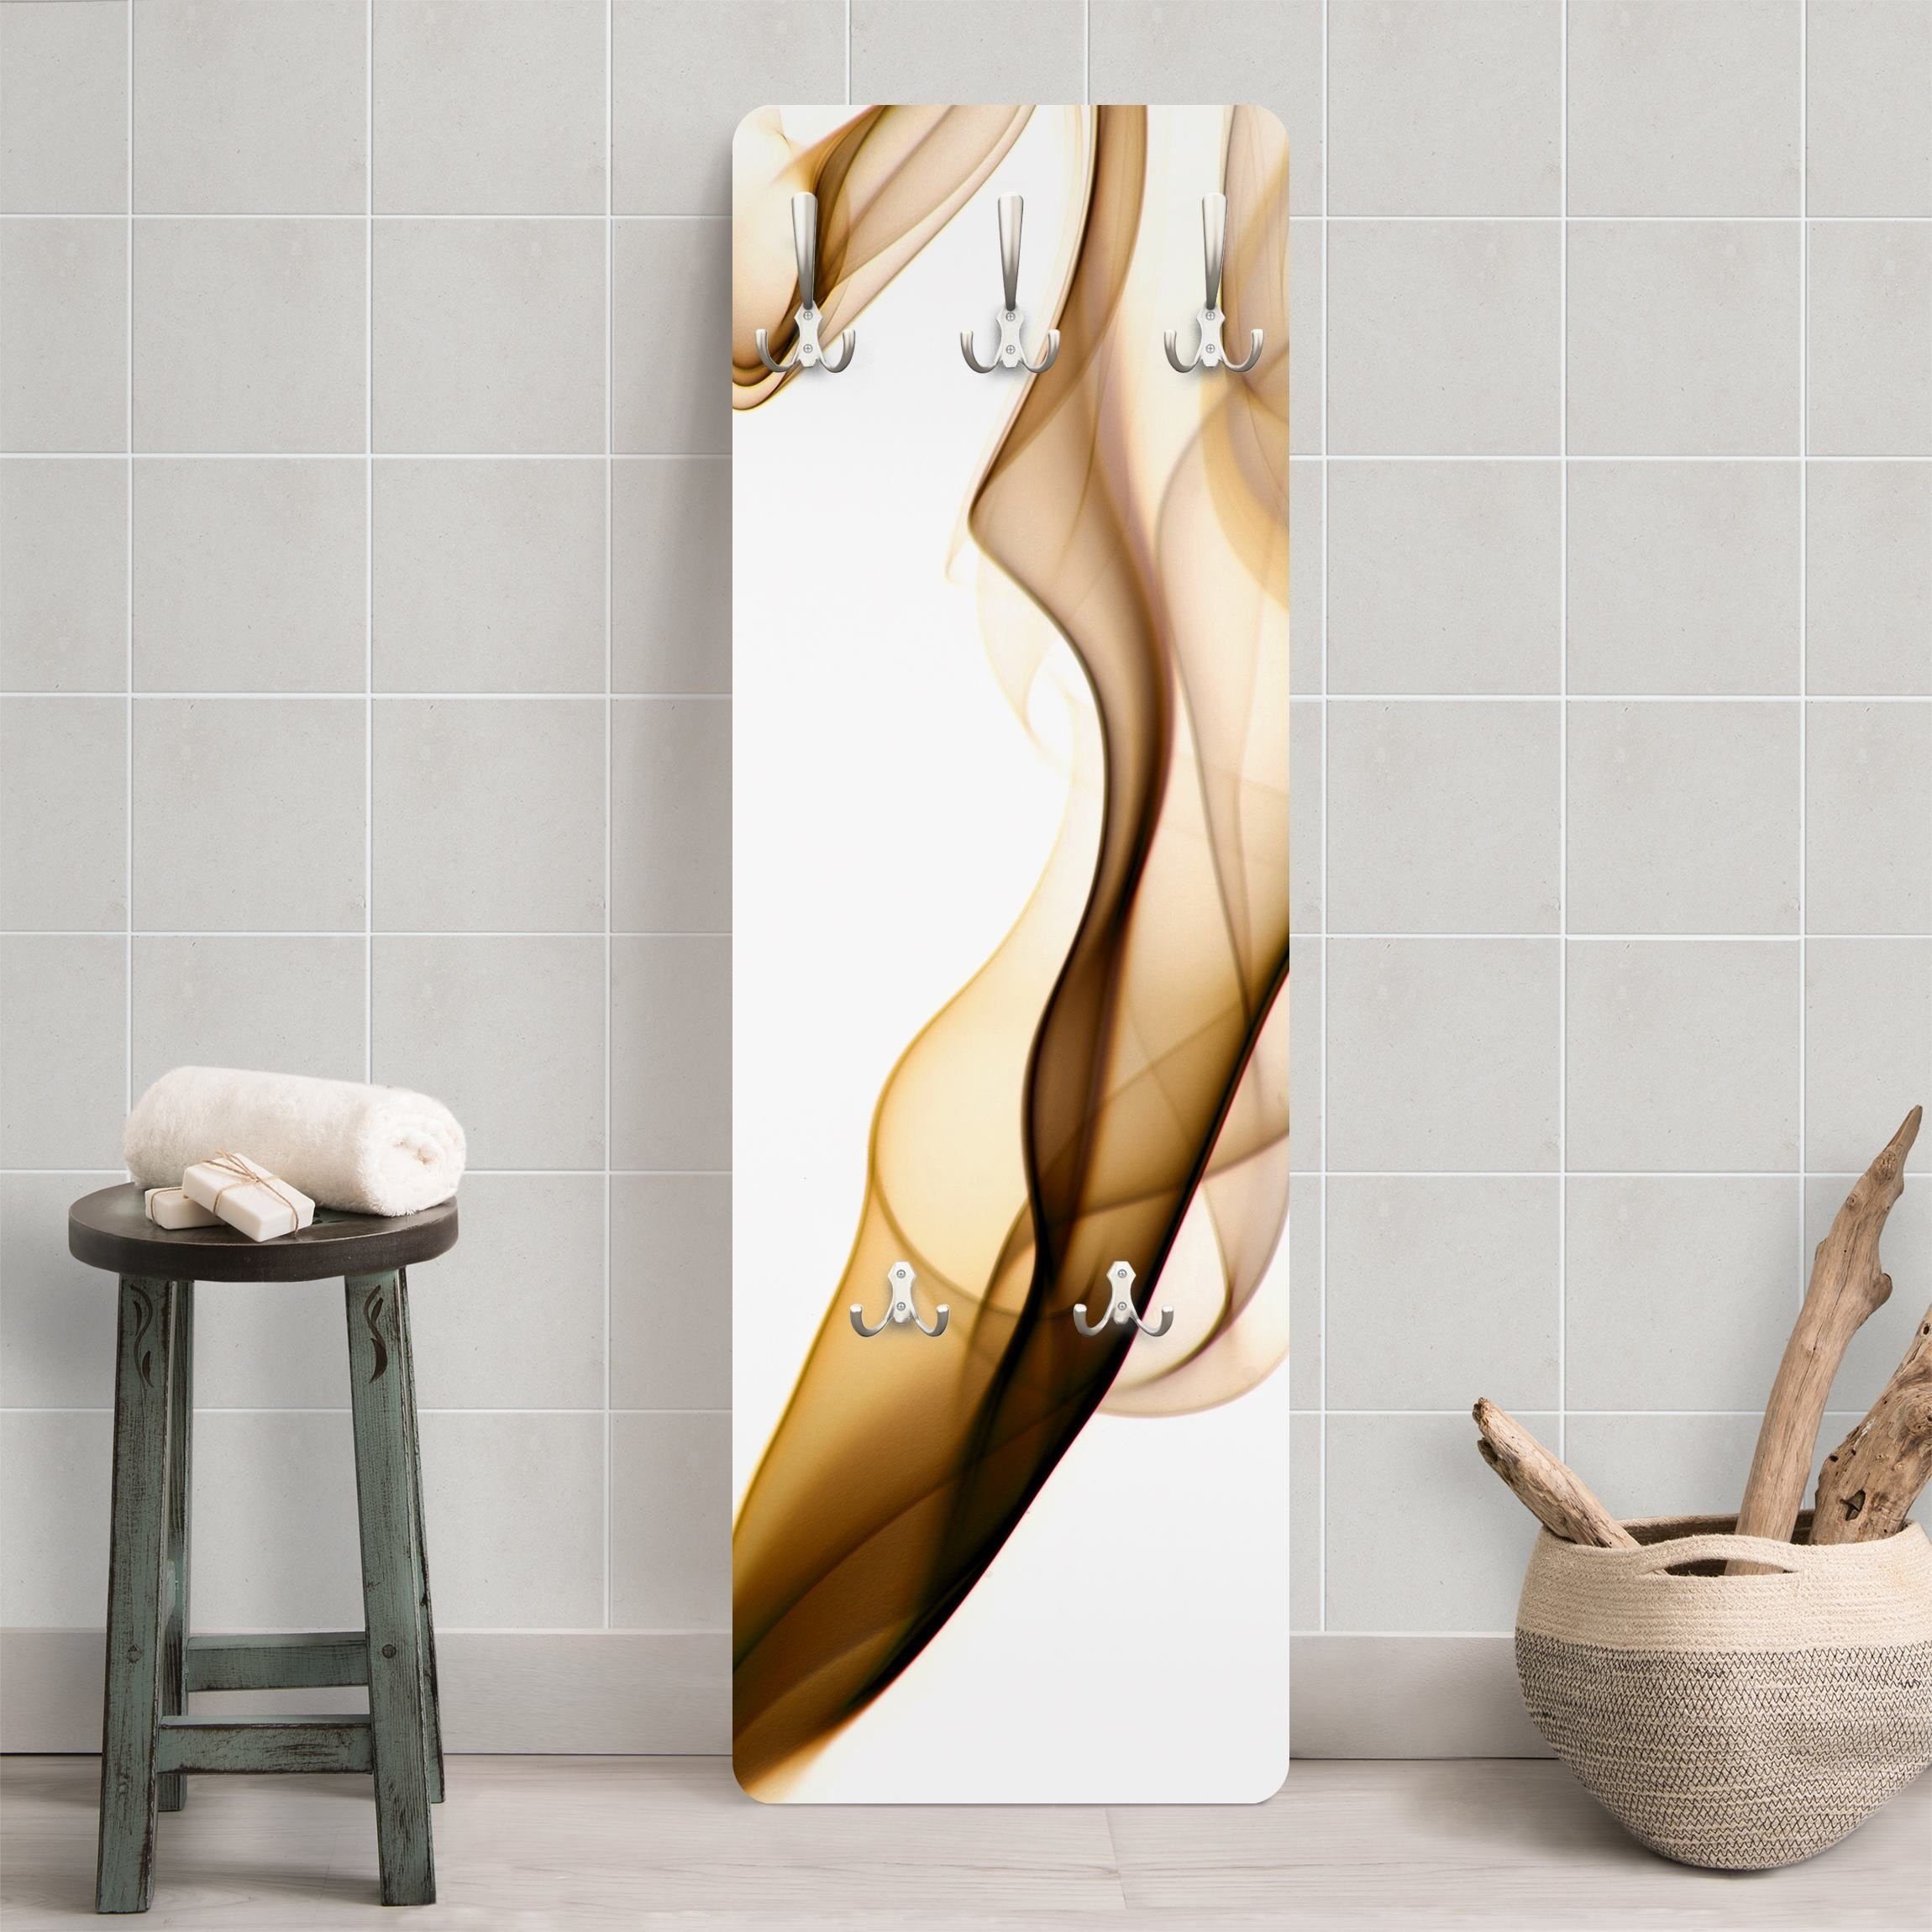 Bilderdepot24 Garderobenpaneel Design Abstrakt Golden Nebula (ausgefallenes  Flur Wandpaneel mit Garderobenhaken Kleiderhaken hängend), moderne  Wandgarderobe - Flurgarderobe im schmalen Hakenpaneel Design